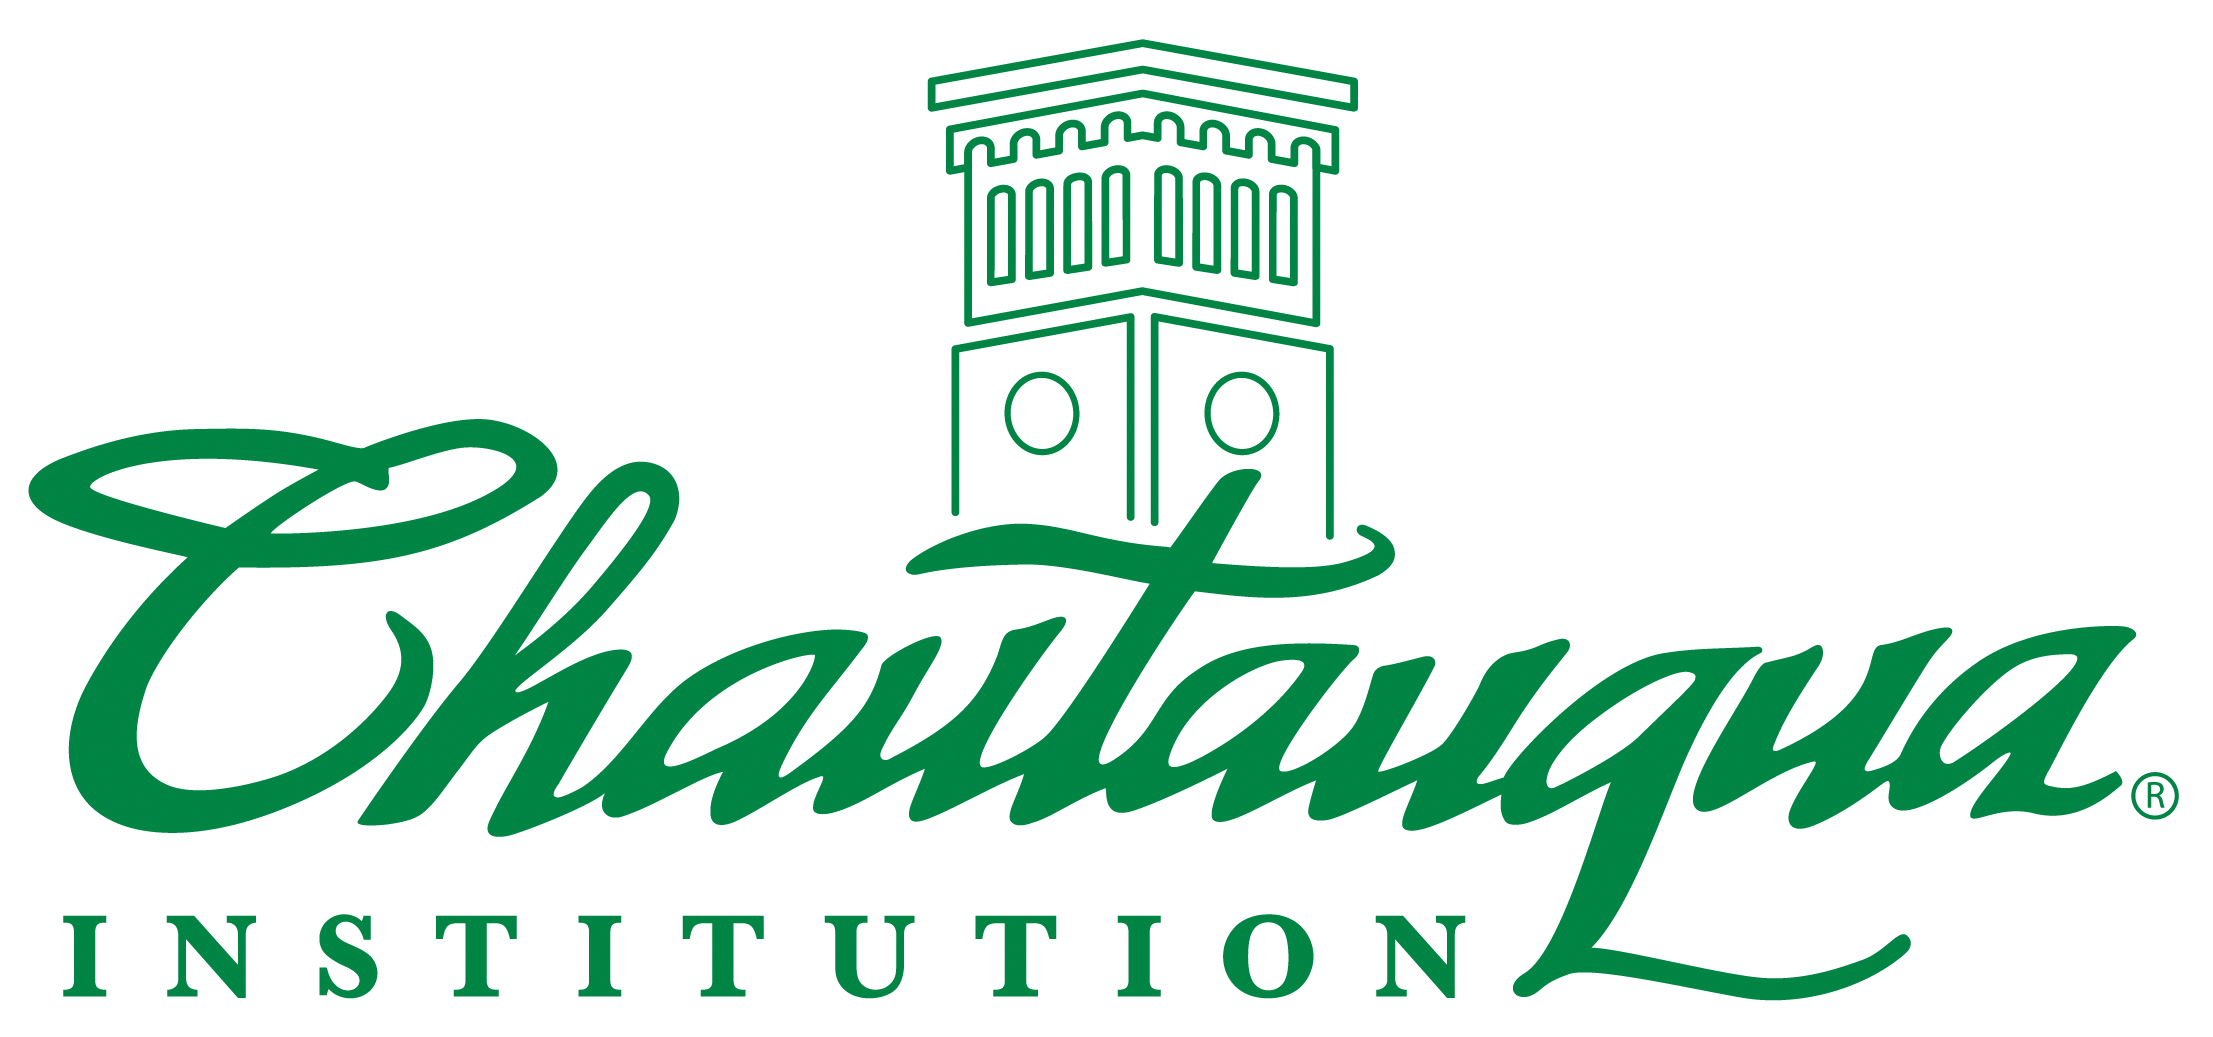 Chautauqua Institution Logo